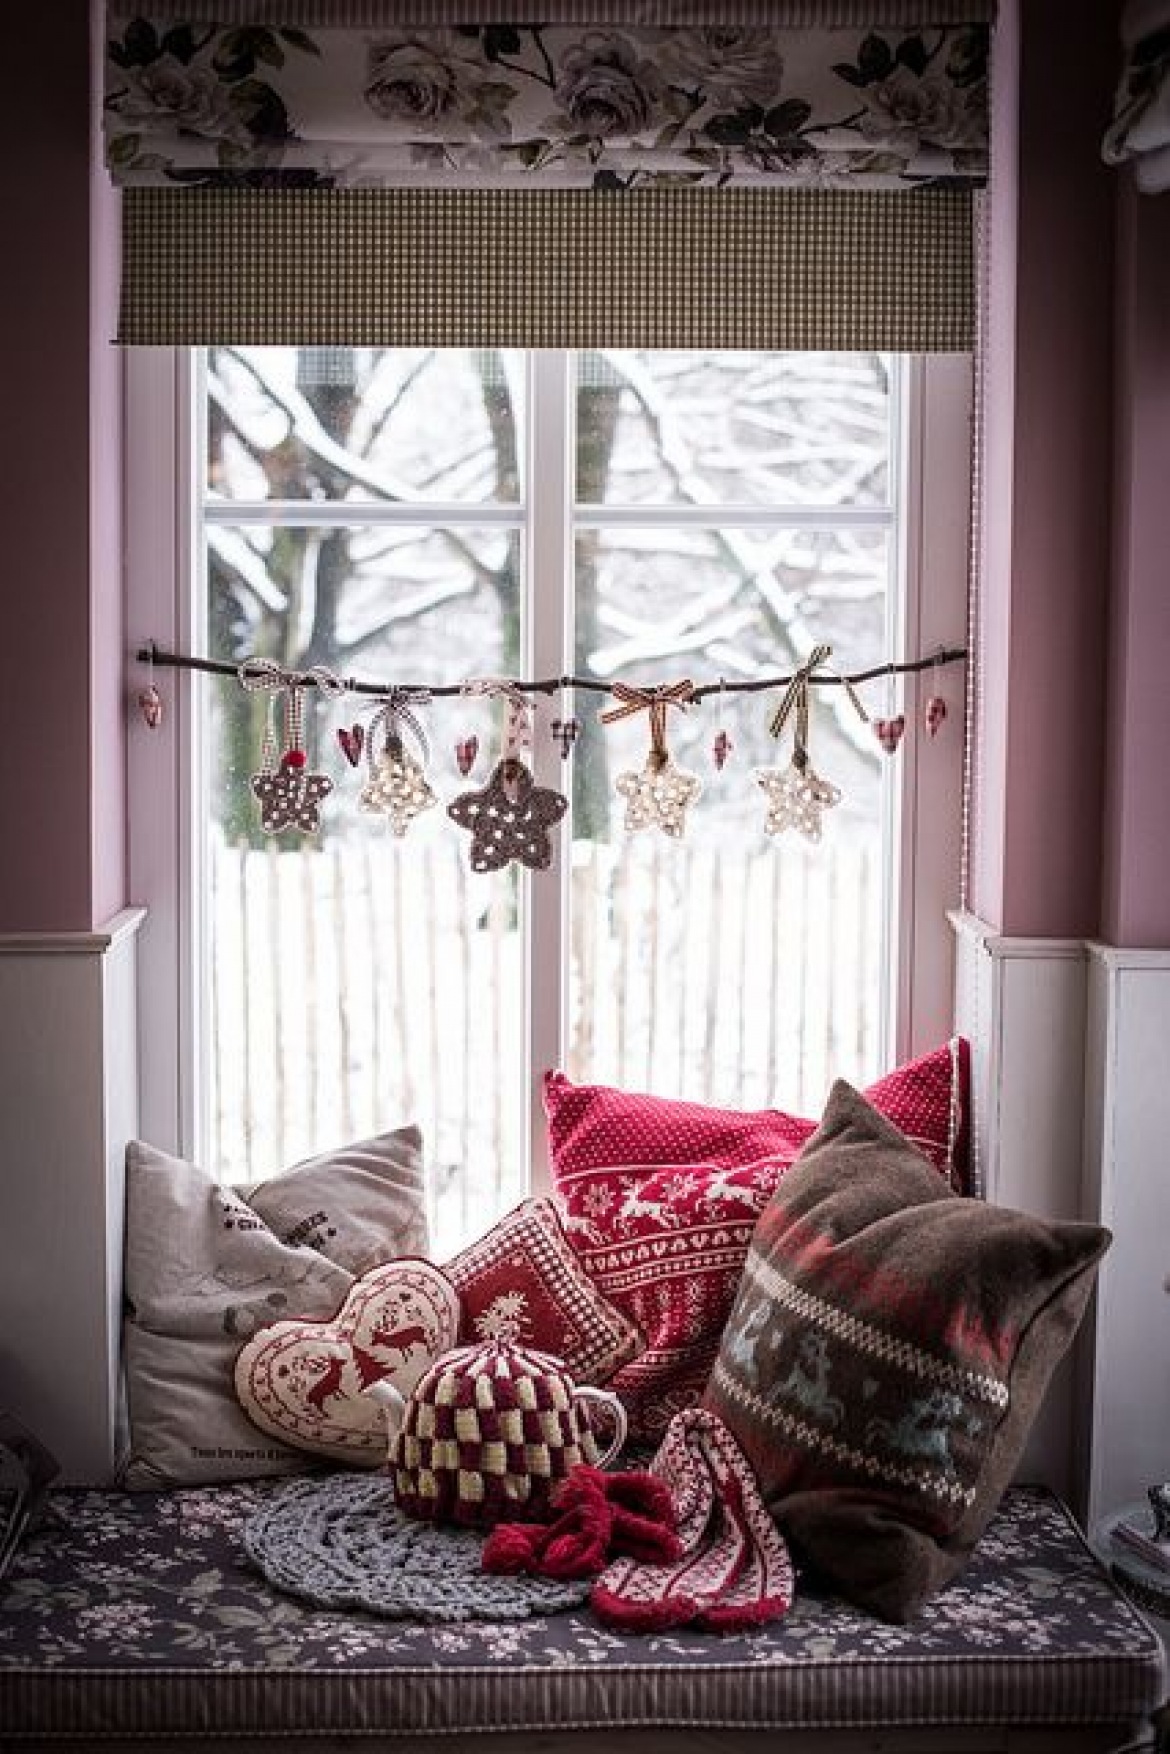 Zimowe dekoracje w aranżacji leżanki w oknie (54040)